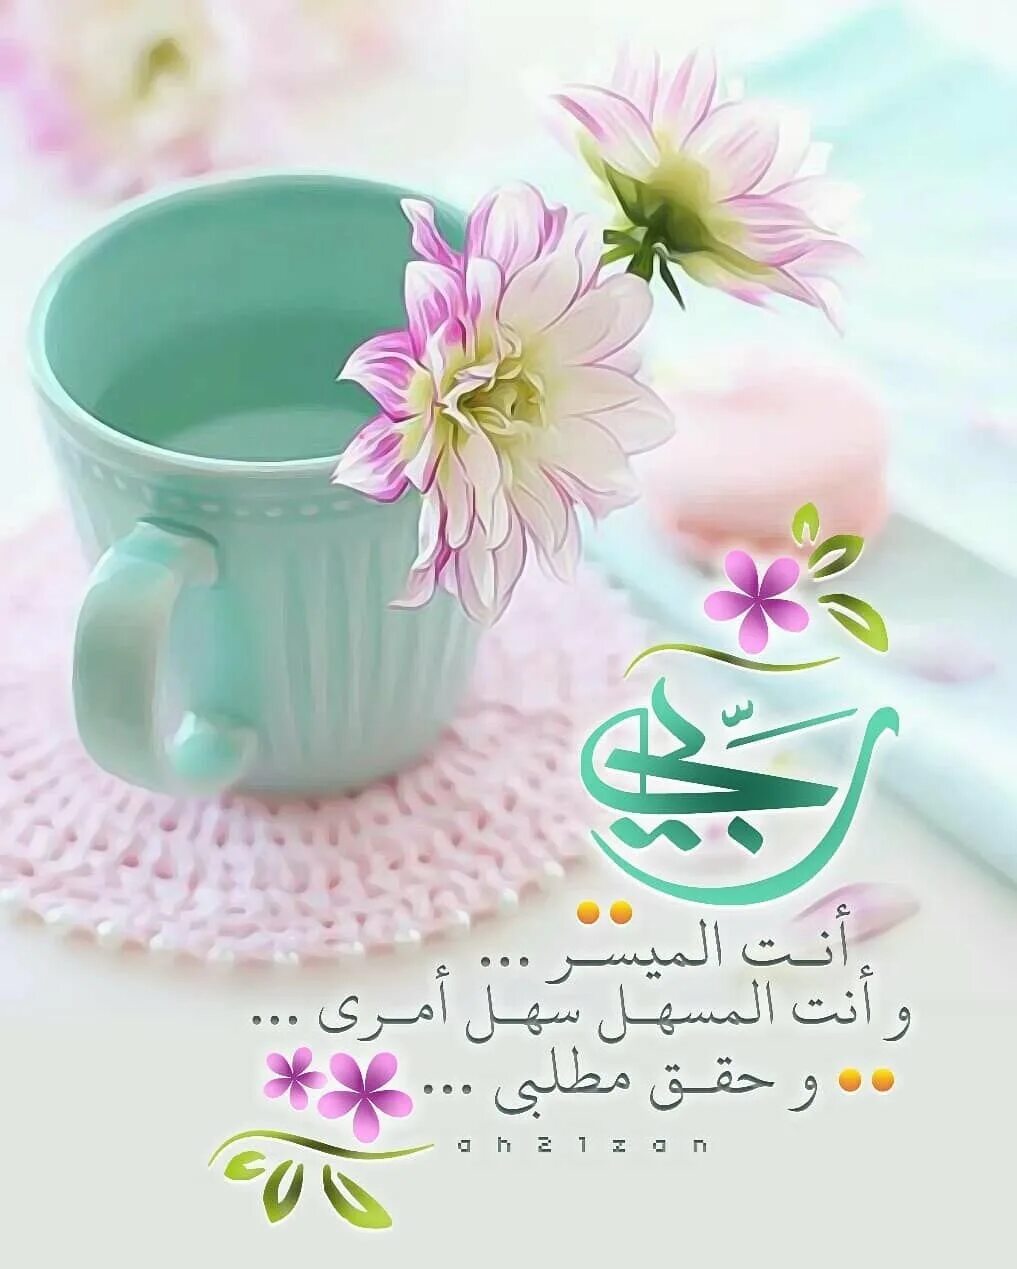 Мусульманские пожелания с добрым утром. Исламские пожелания доброго утра. Мусульманские поздравления с добрым утром!. Доброе утро мусульманские пожелания